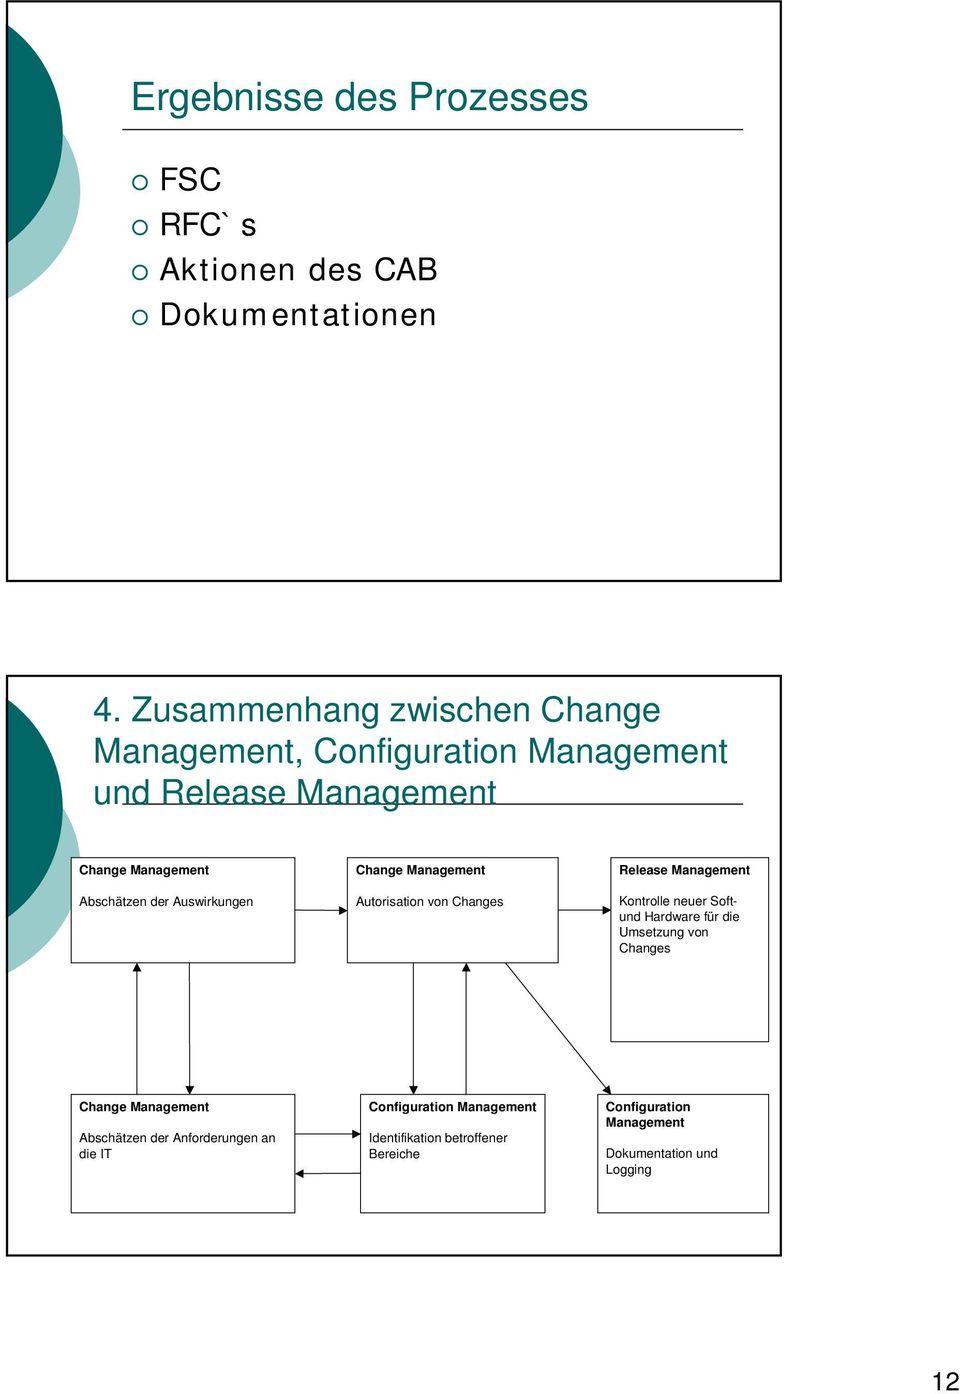 Auswirkungen Change Management Autorisation von Changes Release Management Kontrolle neuer Softund Hardware für die Umsetzung